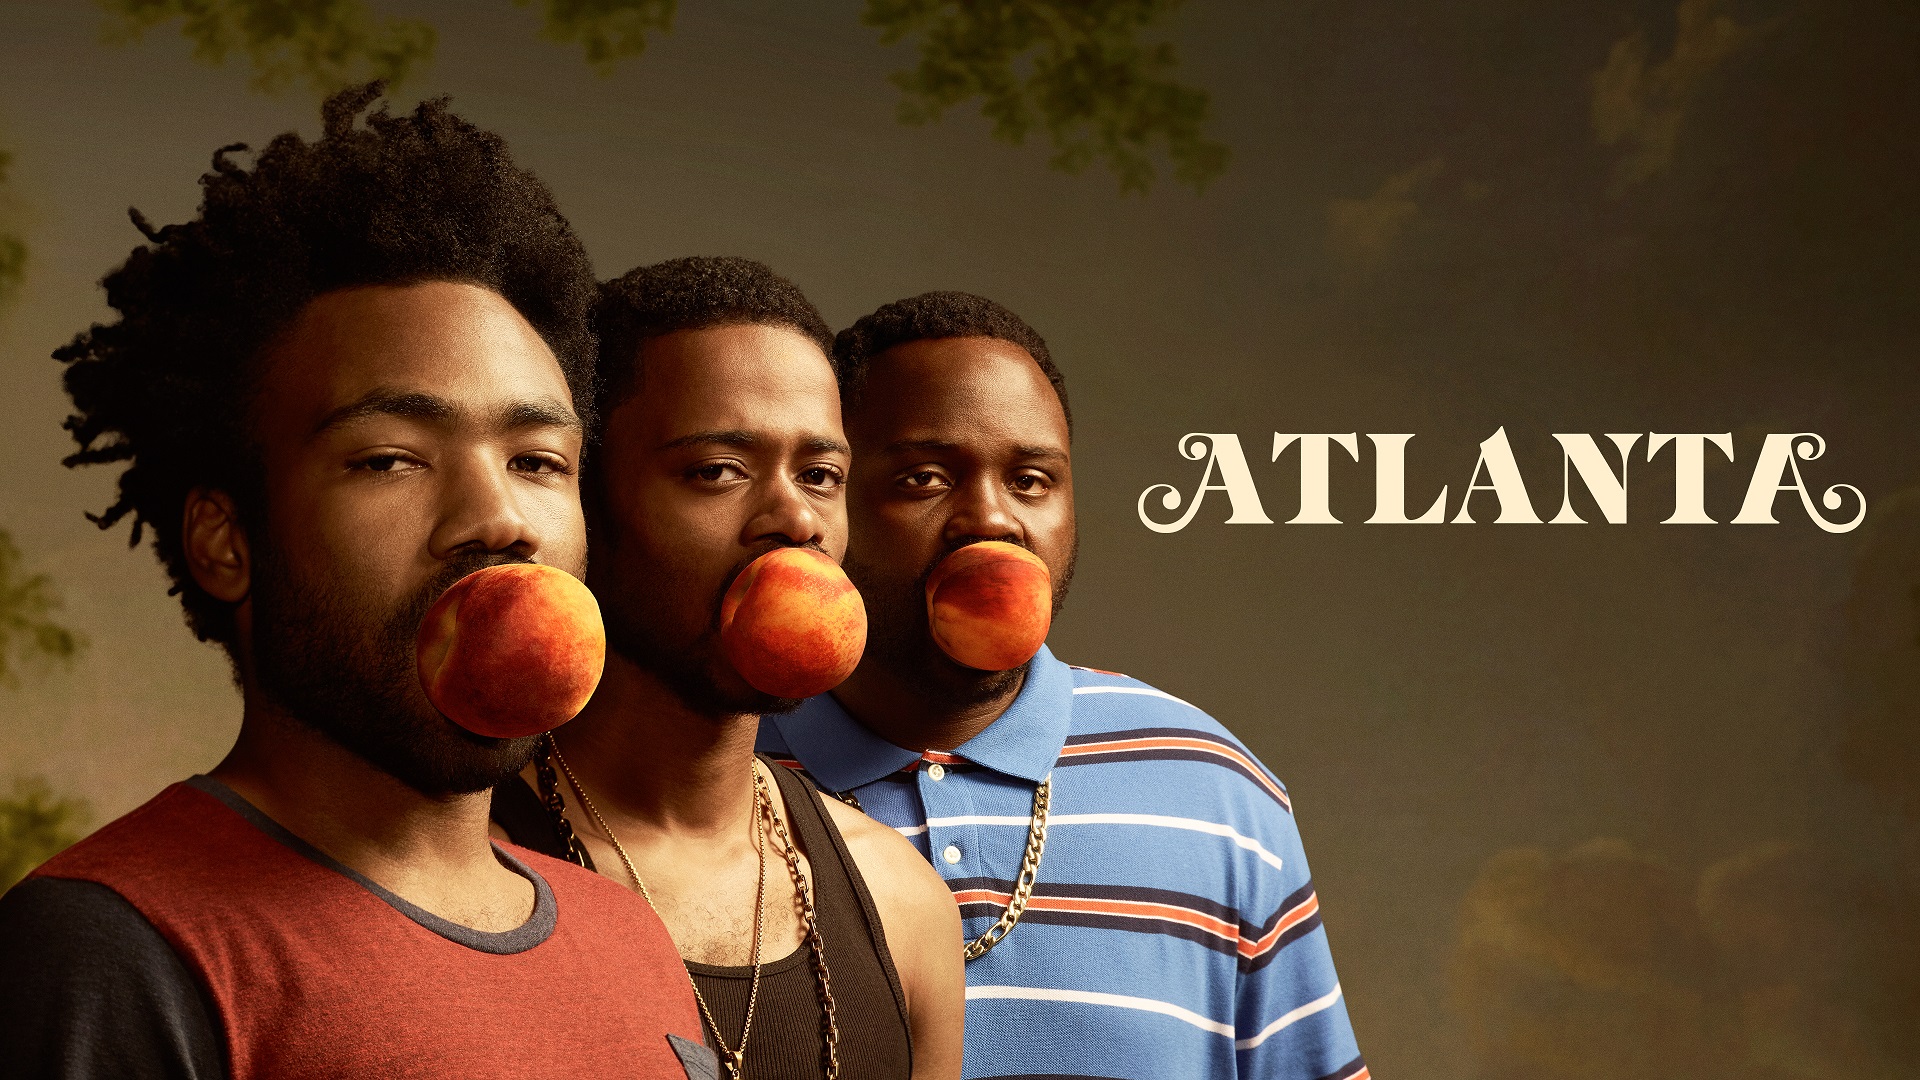 مکان فیلمبرداری فصل های جدید سریال محبوب Atlanta